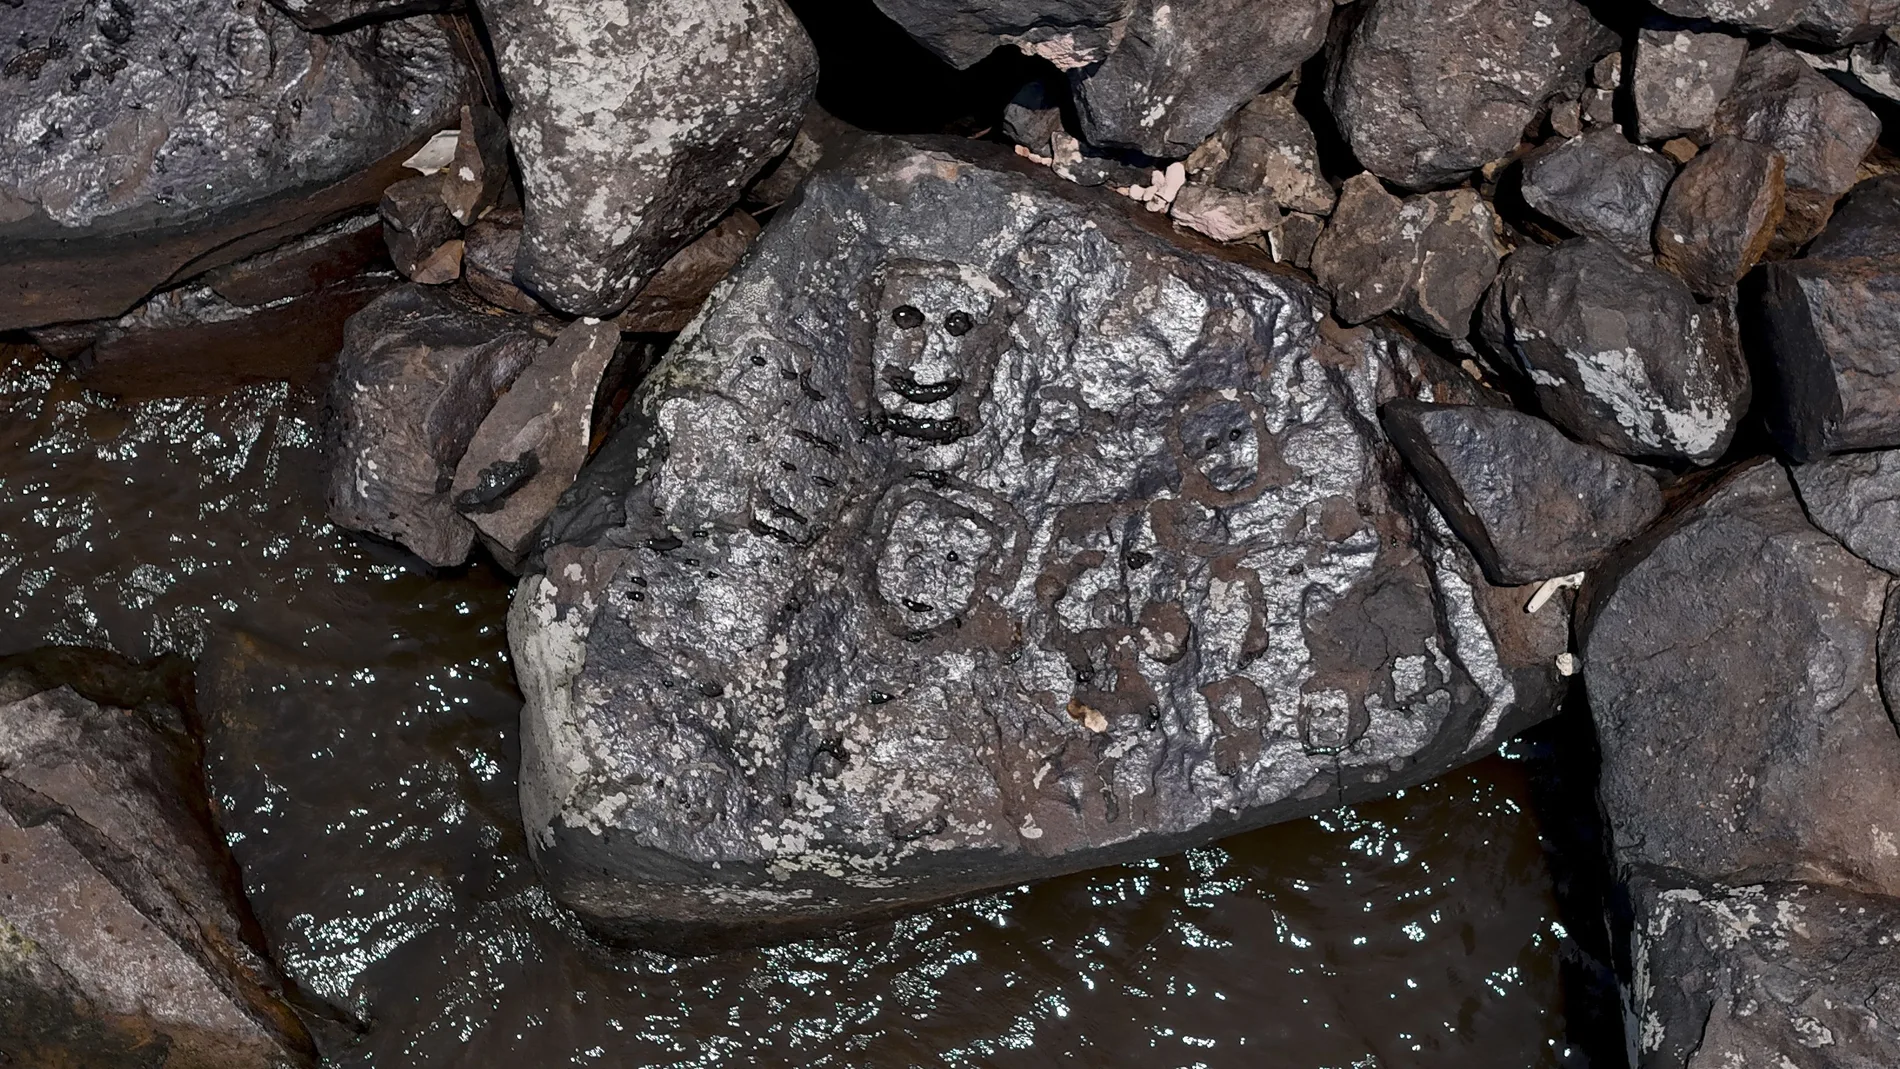 Antiguos grabados rupestres que reaparecieron en la región del Sitio Arqueológico de Lajes debido a la grave sequía que afecta a los ríos de la región se muestran en las orillas del río Negro en Manaos, estado de Amazonas, al norte de Brasil, el 21 de octubre de 2023. - La última vez Los grabados se pudieron ver fue durante la gran sequía de 2010.